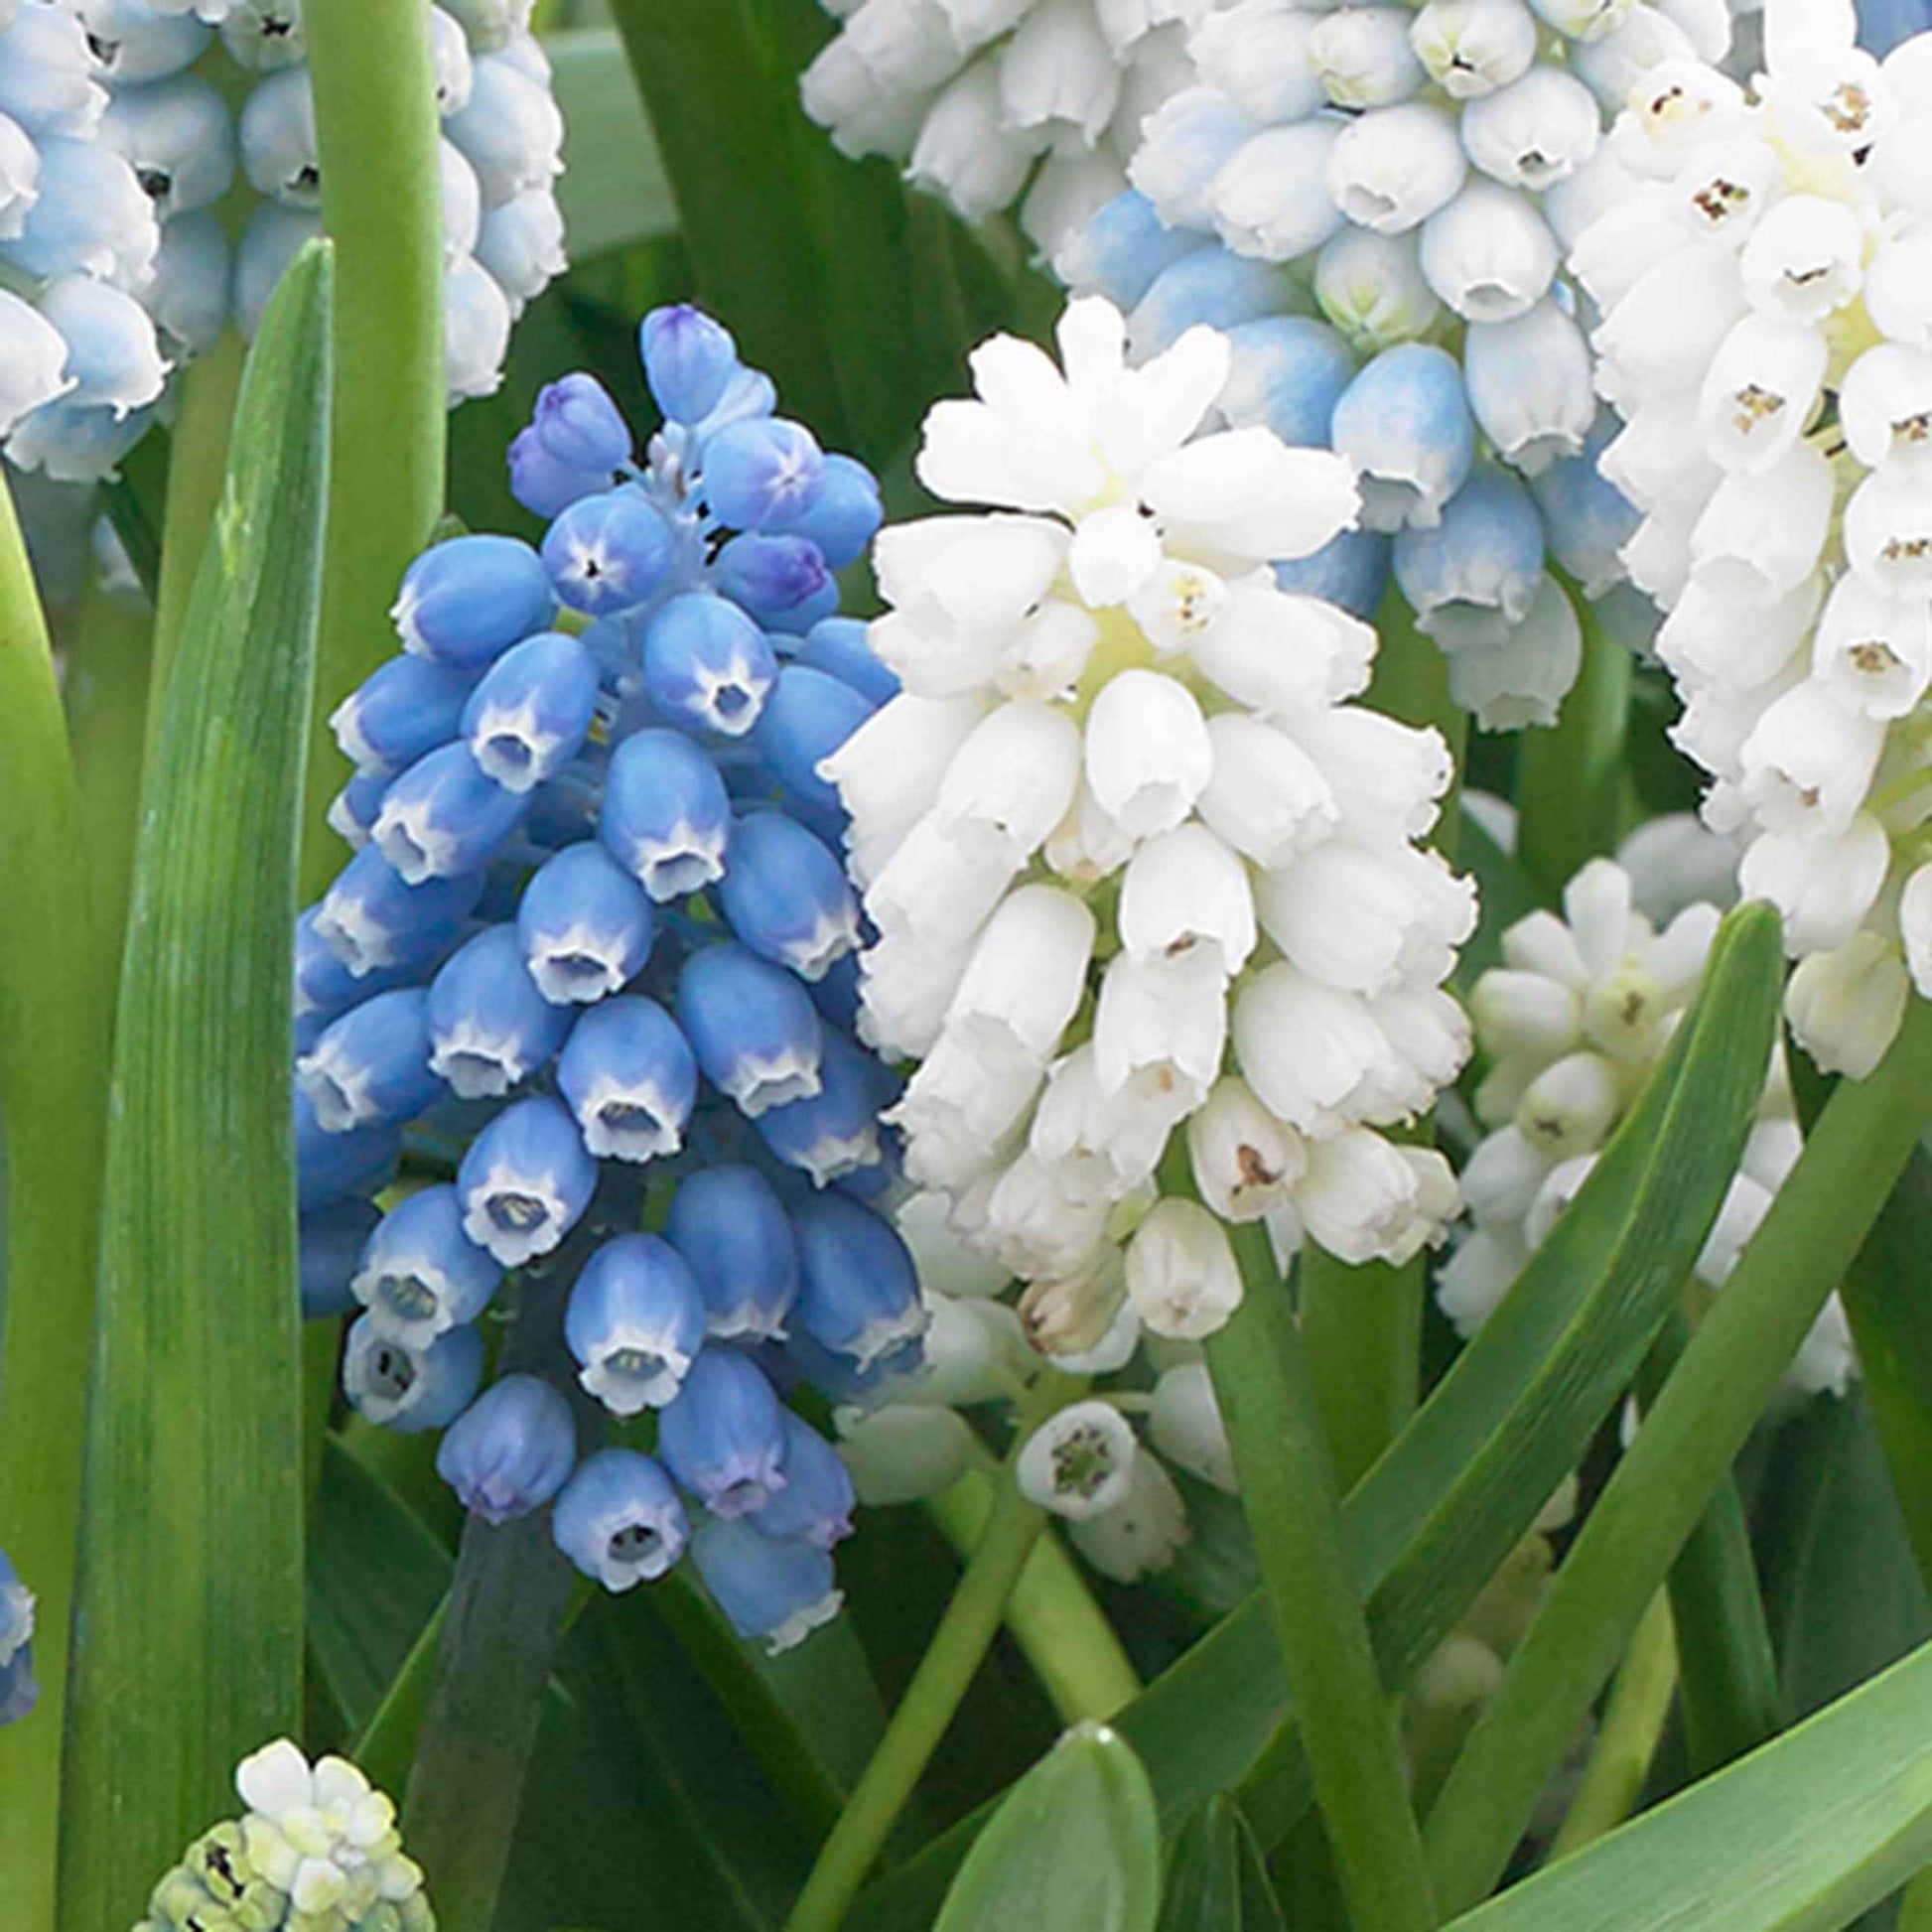 50x Blaue + weiße Trauben Muscari - Mischung 'Spring Hill Blend' blau-weiβ - Alle Blumenzwiebeln